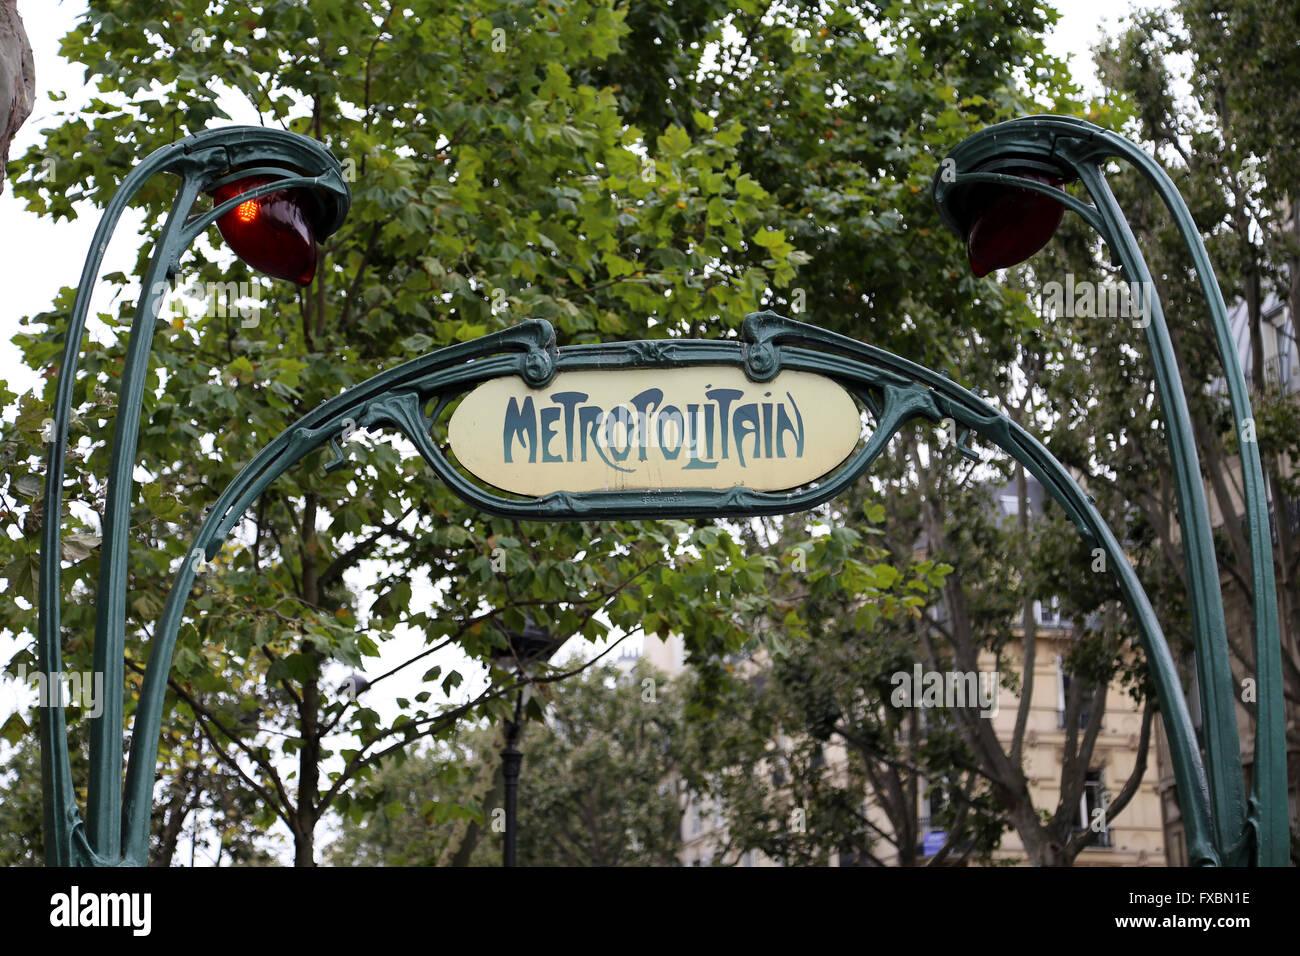 La estación de metro de París, diseñado por Hector Guimard (1867-1942). El Art Nouveau. París. Francia. Foto de stock